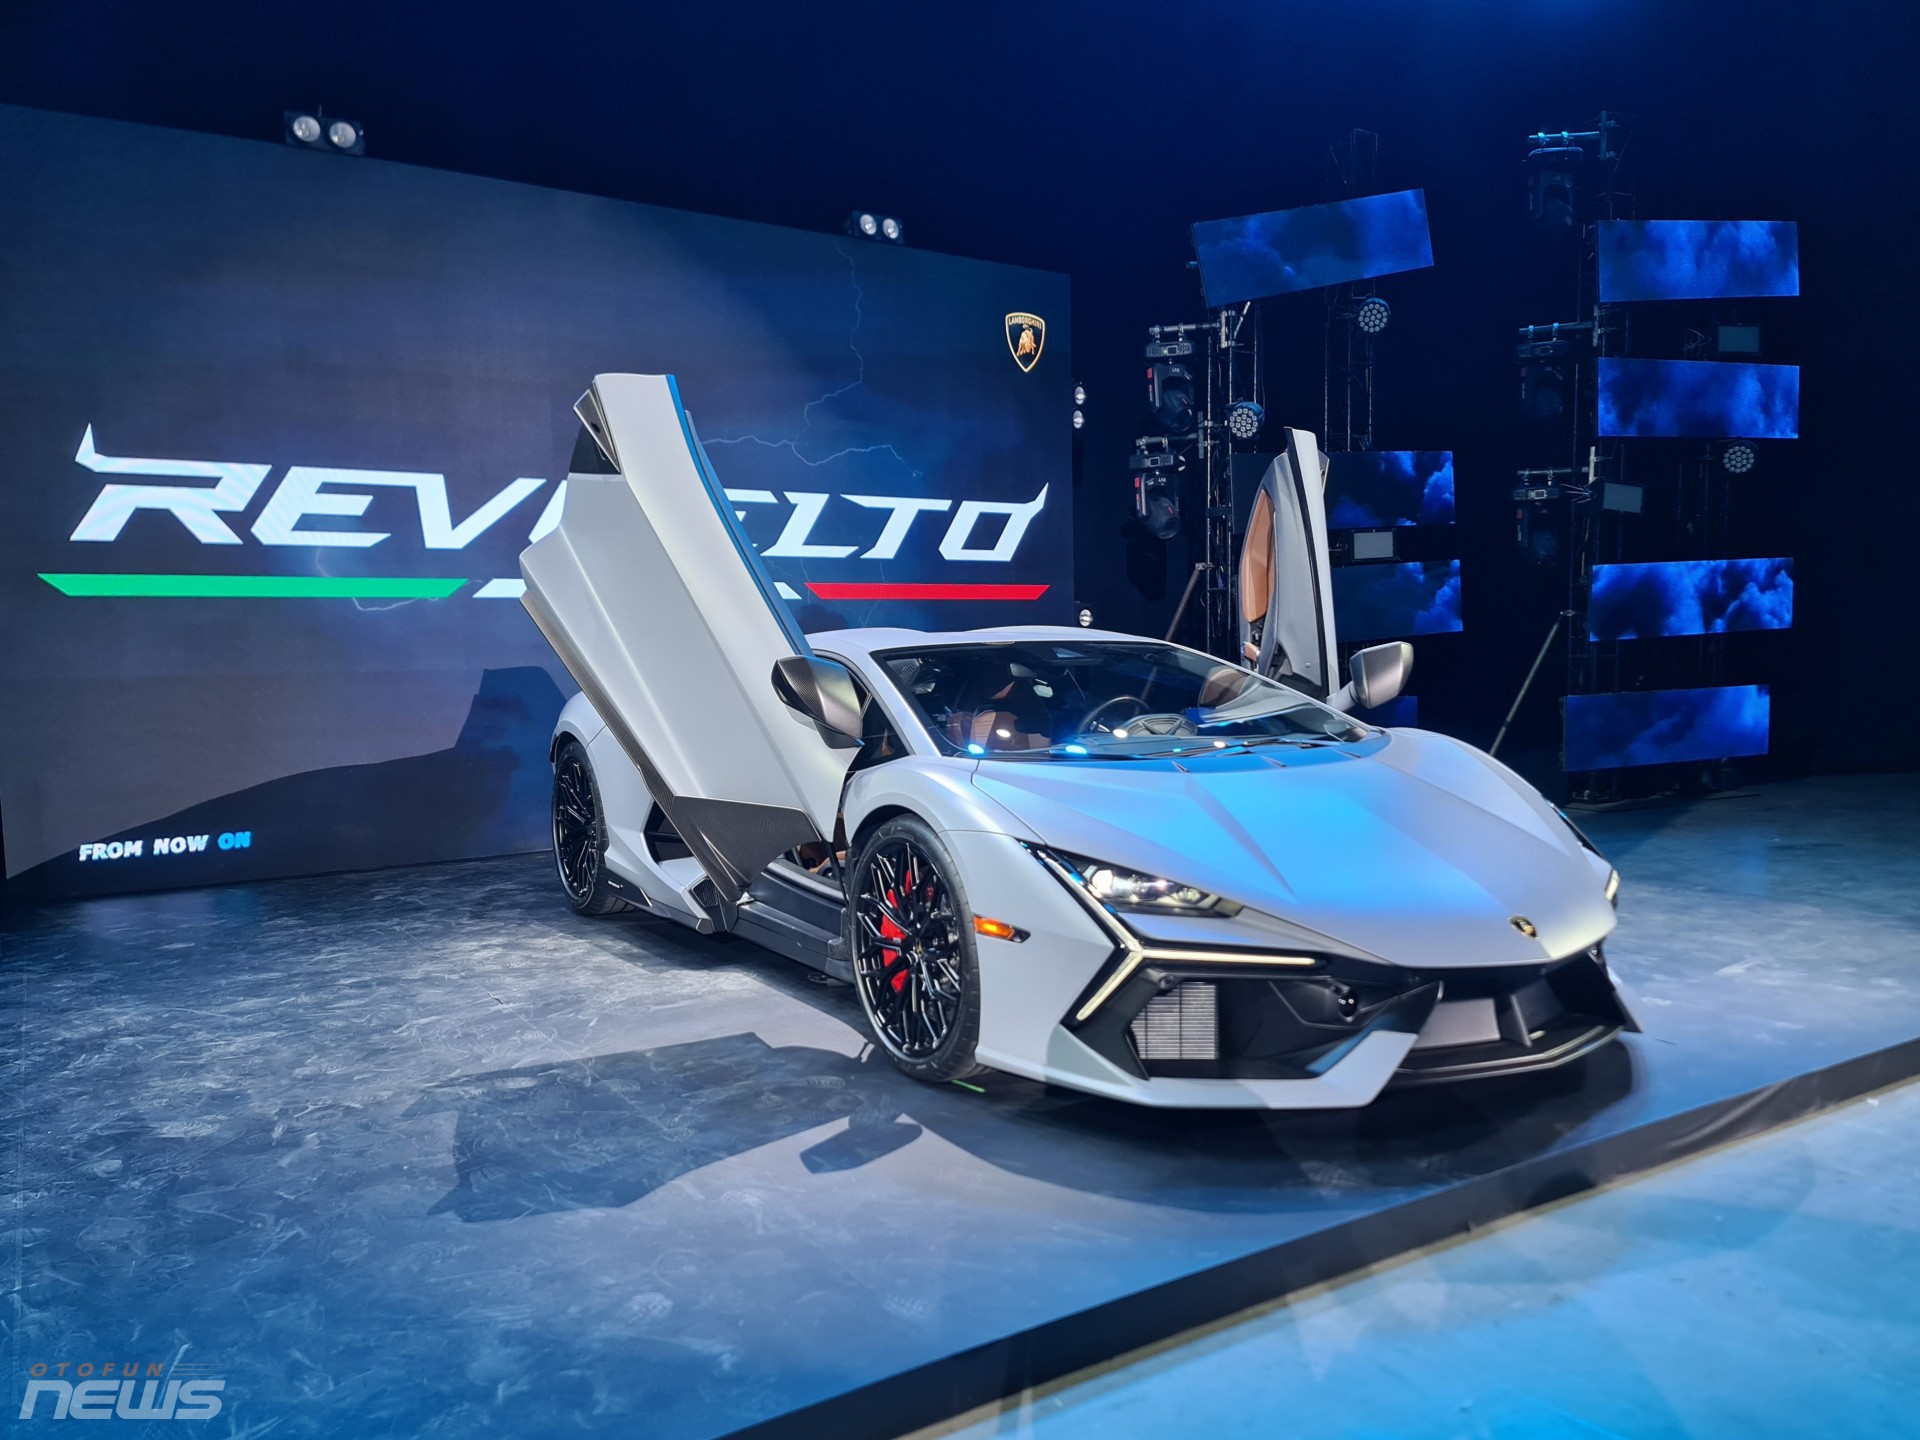 Siêu bò Lamborghini Revuelto được chào bán tại Việt Nam với giá 44 tỷ đồng